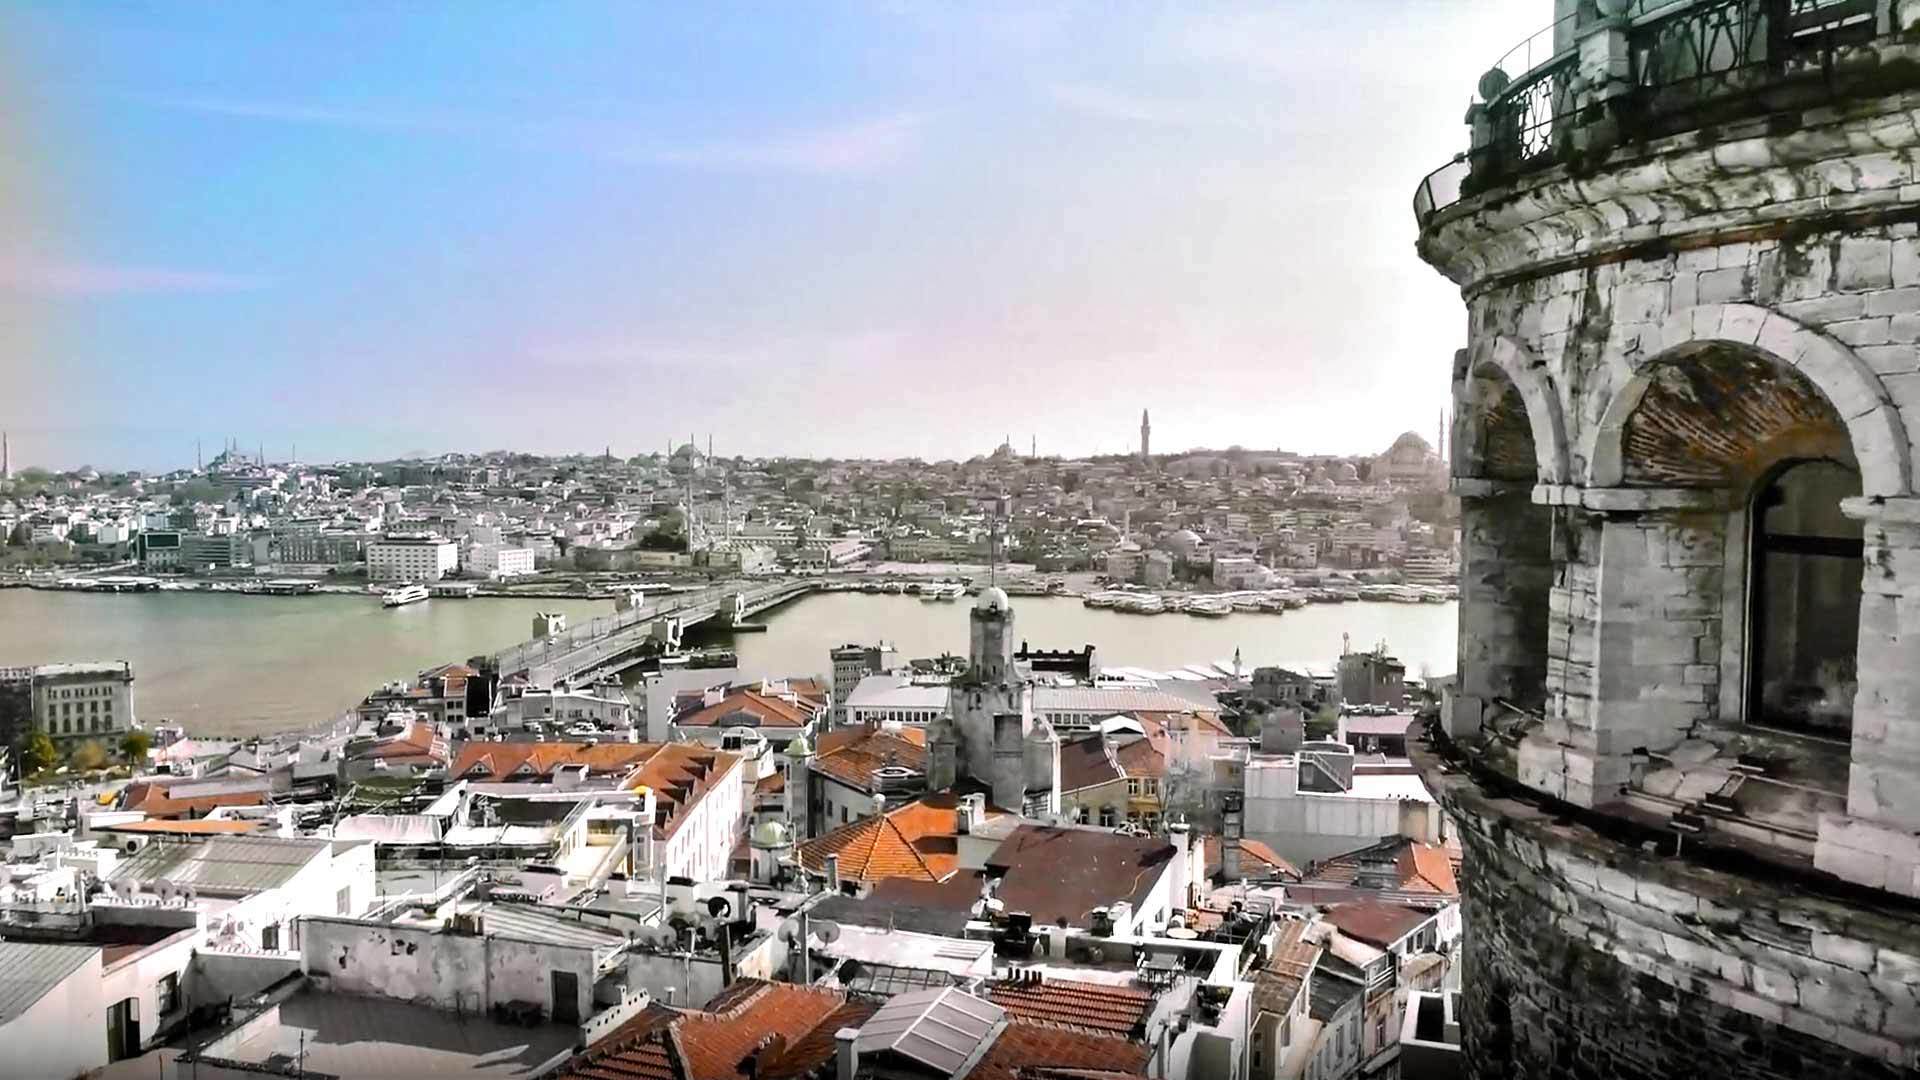 İstanbul Apartmanları